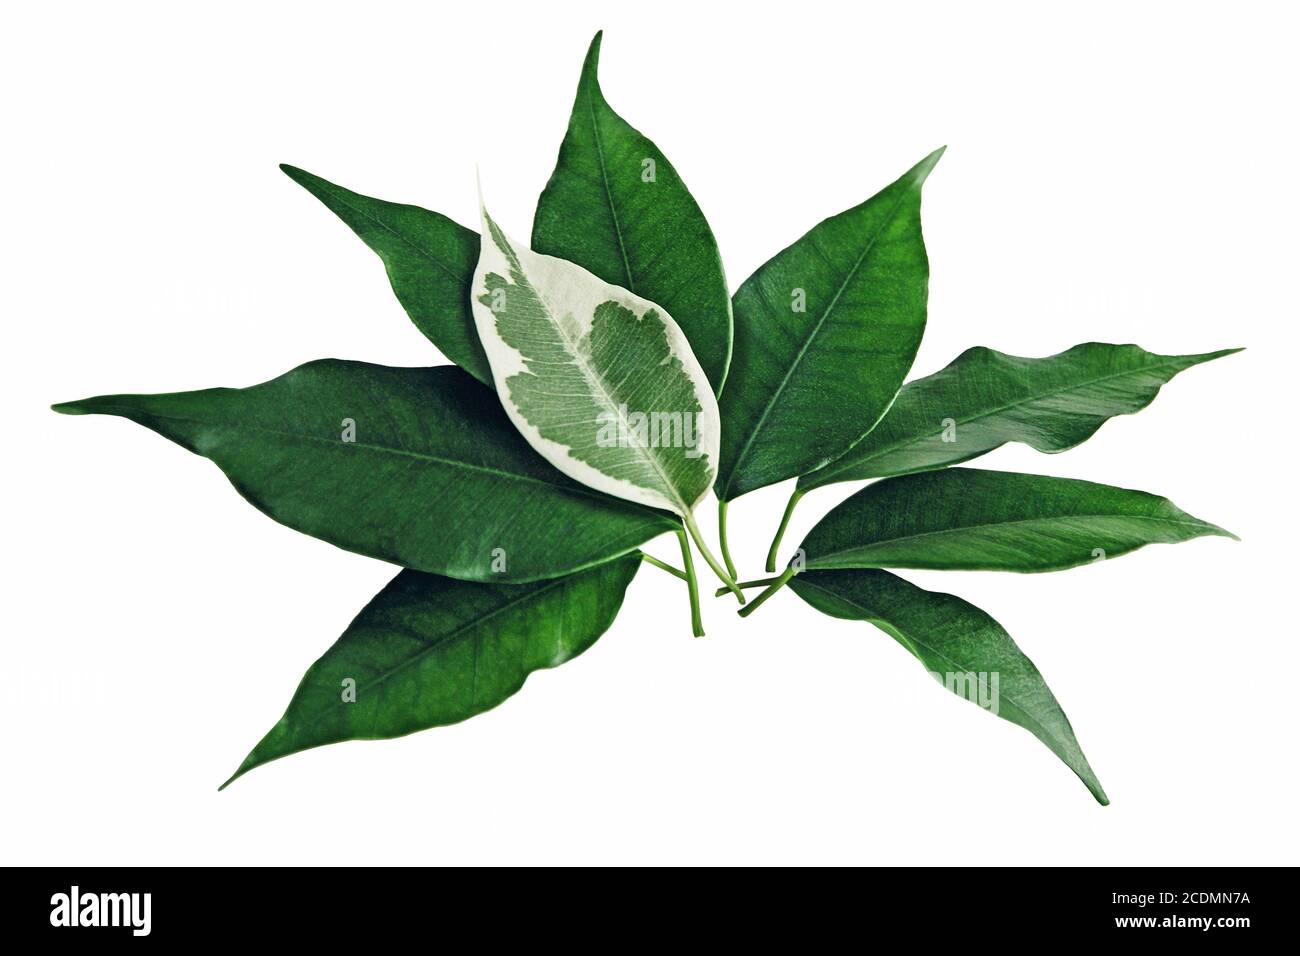 Ficus benjamina grüne Blätter mit einem gefleckten Blatt auf der Oberseite, isoliert auf weiß Stockfoto